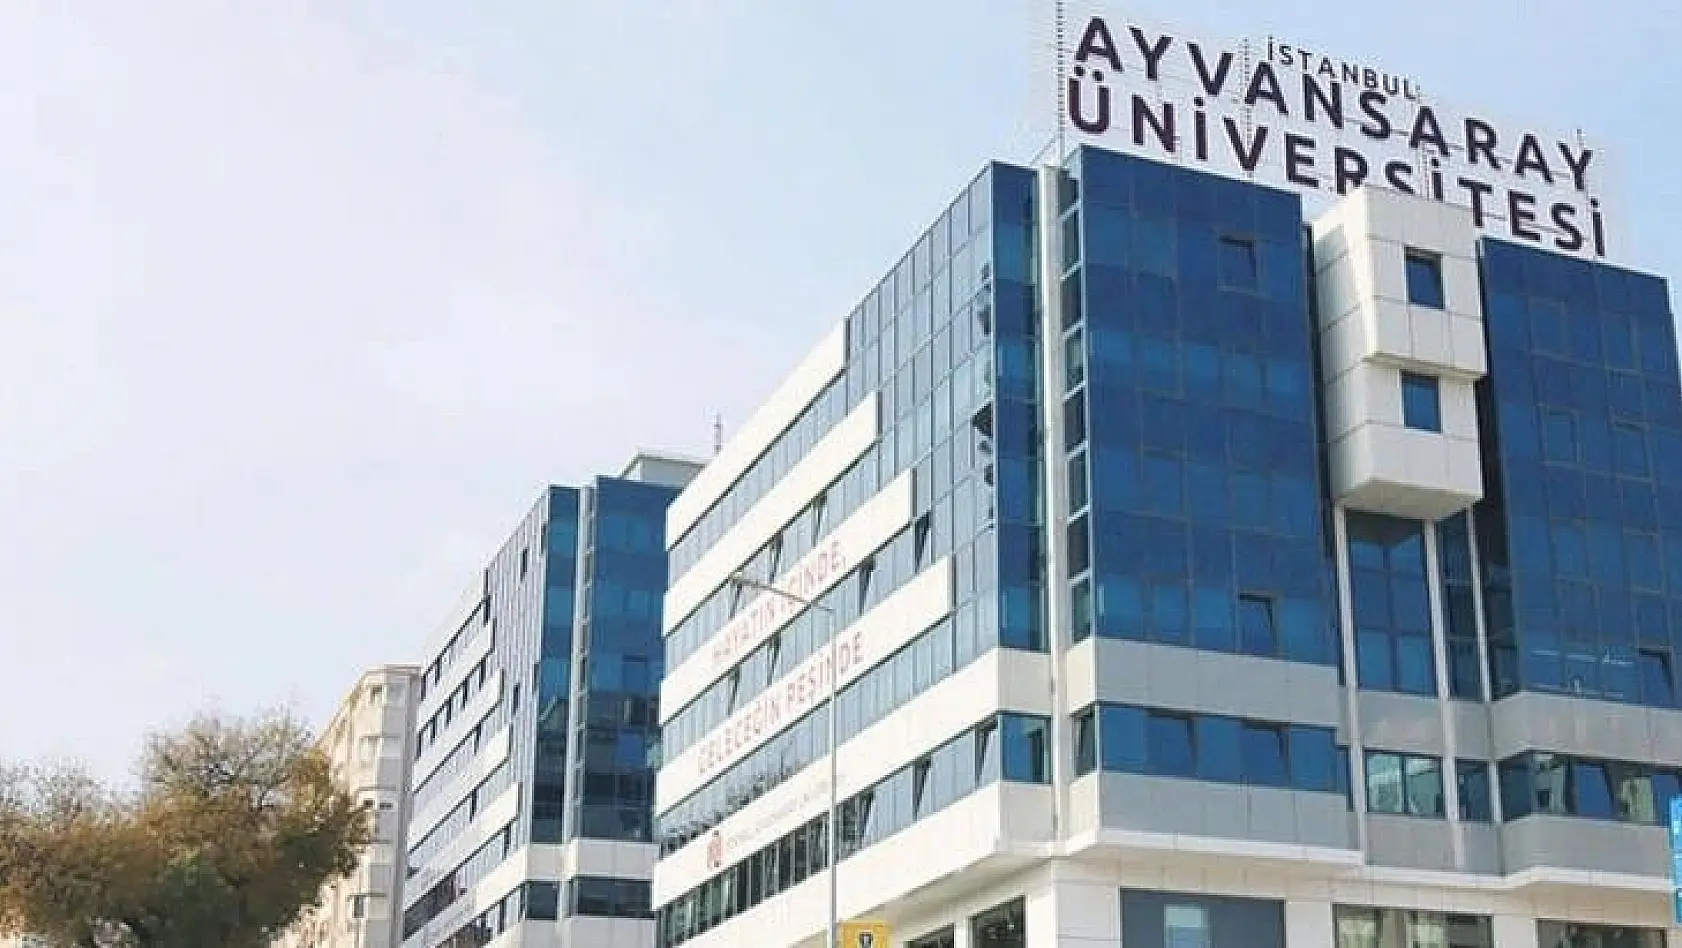 İstanbul Ayvansaray Üniversitesi 12 Araştırma ve Öğretim Görevlisi alıyor